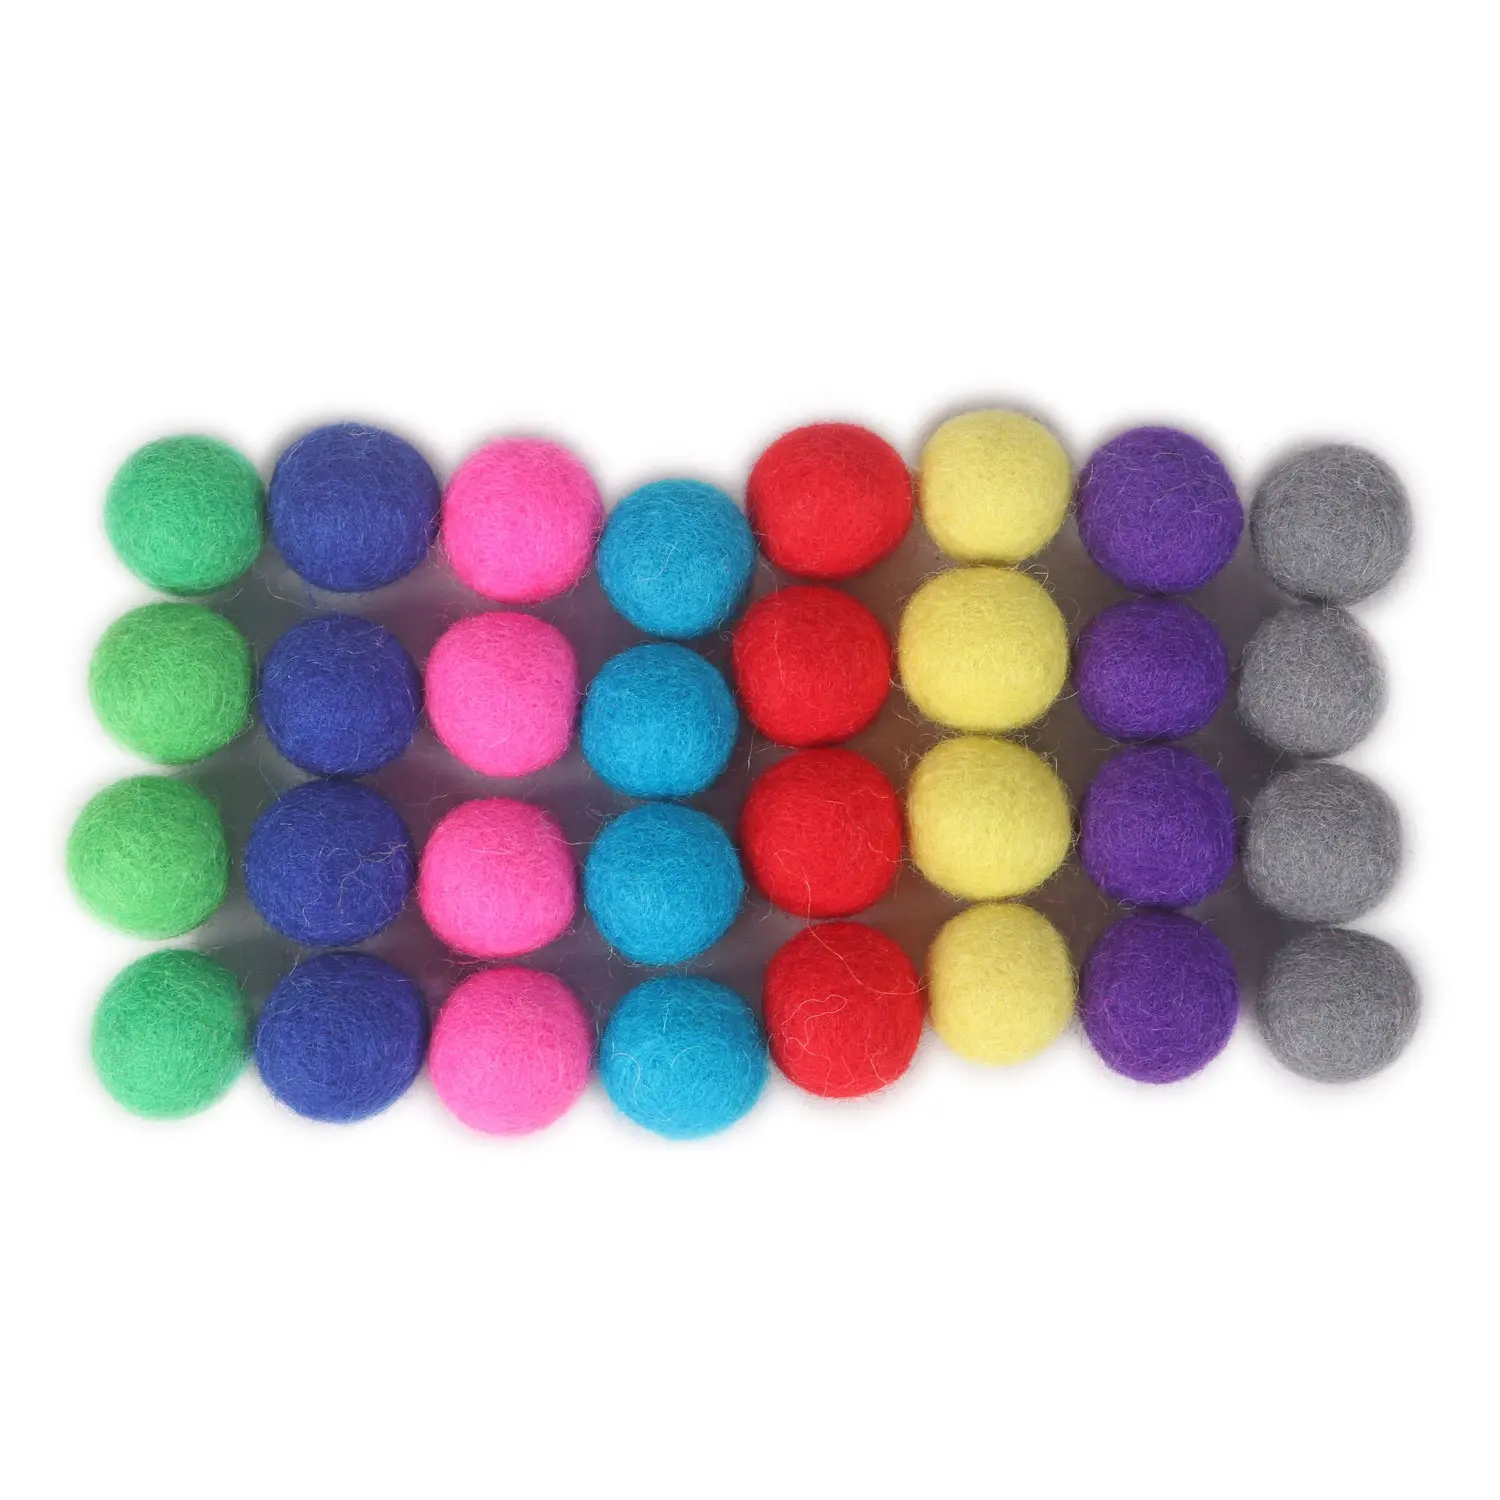 Handgefertigte mehrfarbige Filzkugeln 15 mm  umweltfreundlicher Regenbogen-Feltkugel  Mini-Felt-Pom-Poms für DIY-Projekte und Dekoration